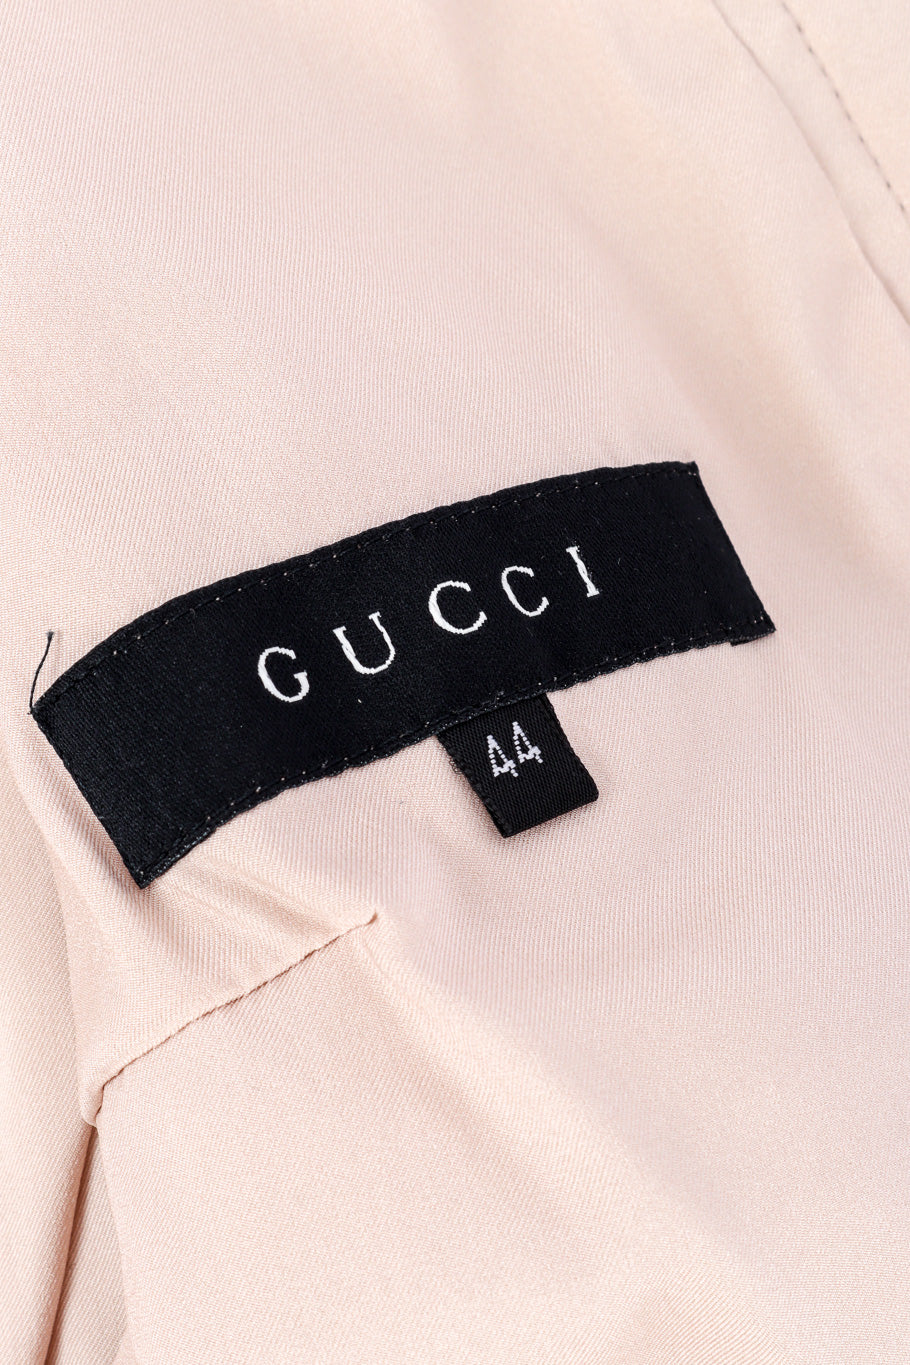 Silk jacket by Gucci label @recessla